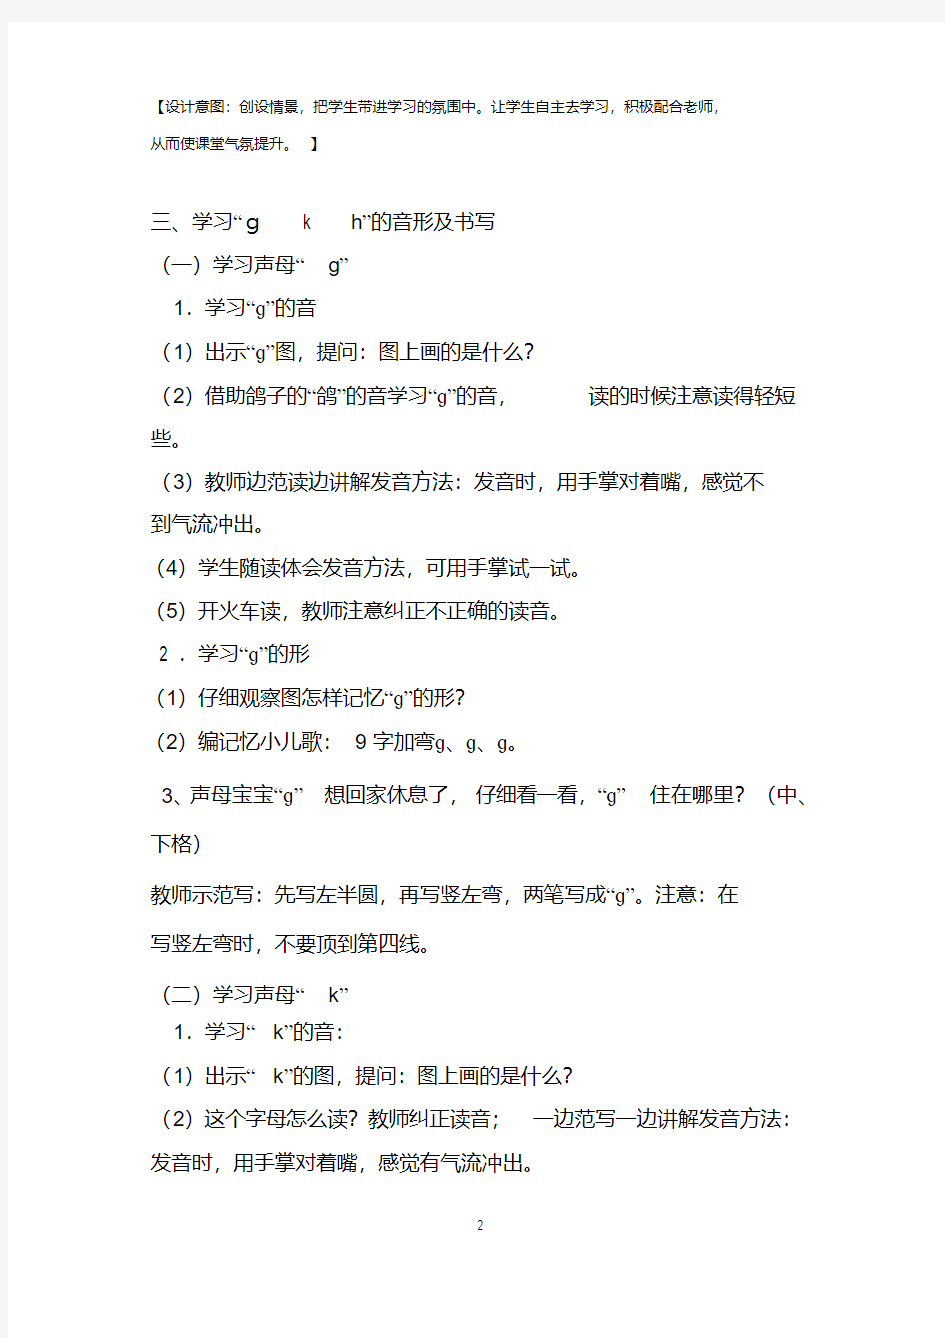 汉语拼音5《gkh》第一课时教学设计